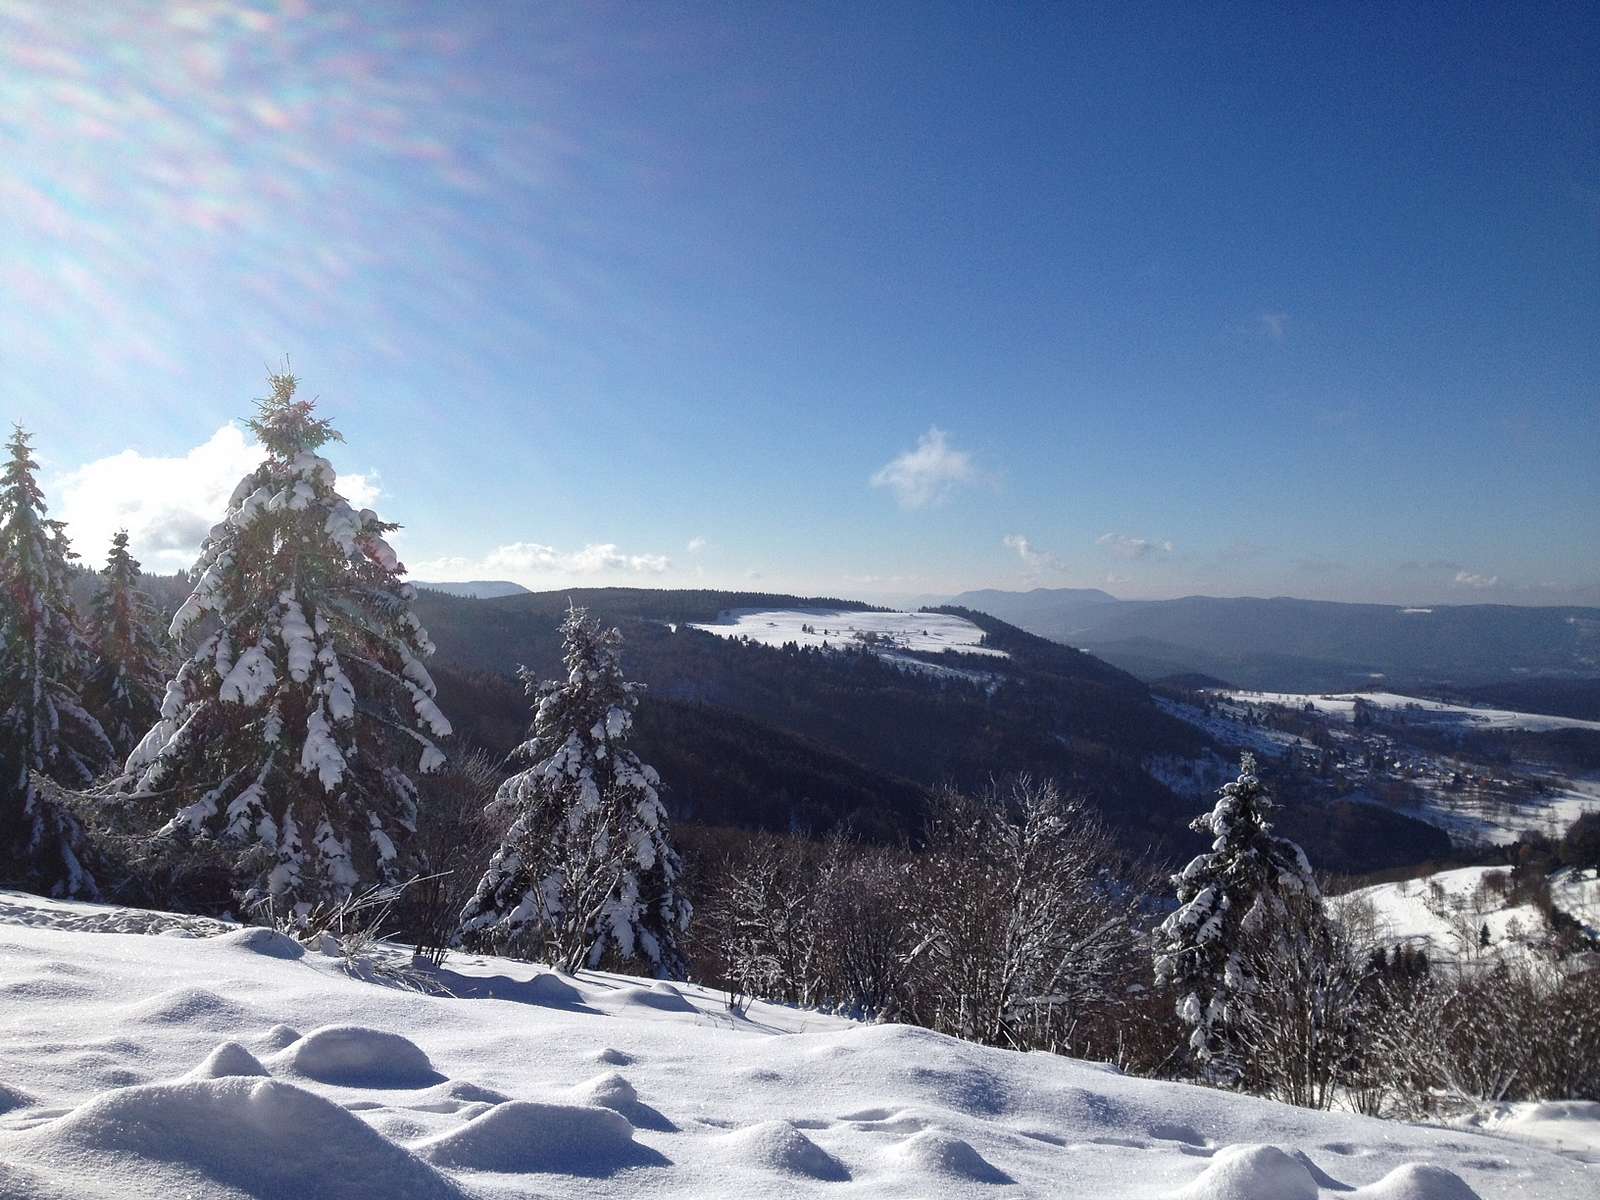 The Bruche Valley in winter